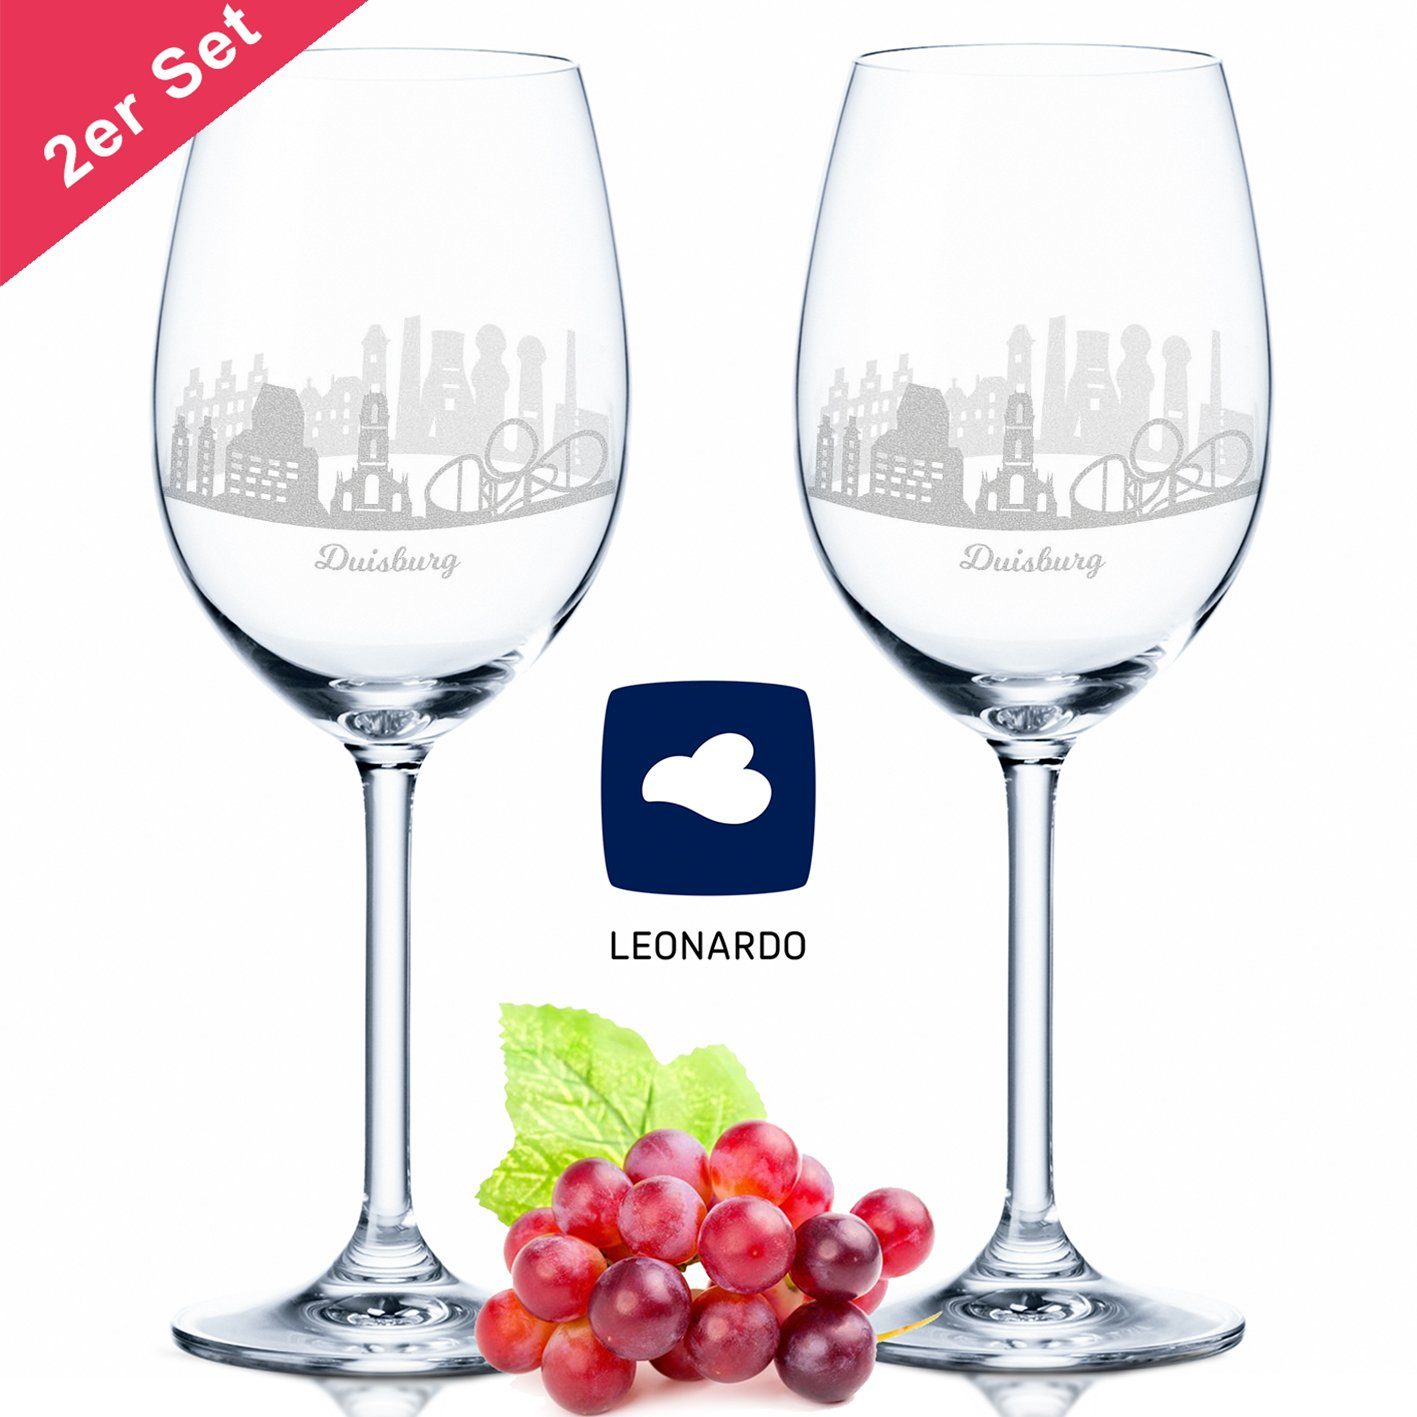 GRAVURZEILE Rotweinglas Leonardo Weinglas im 2er Set mit 360° Gravur - Duisburg, Glas, graviertes Geschenk als Souvenir Andenken & Mitbringsel